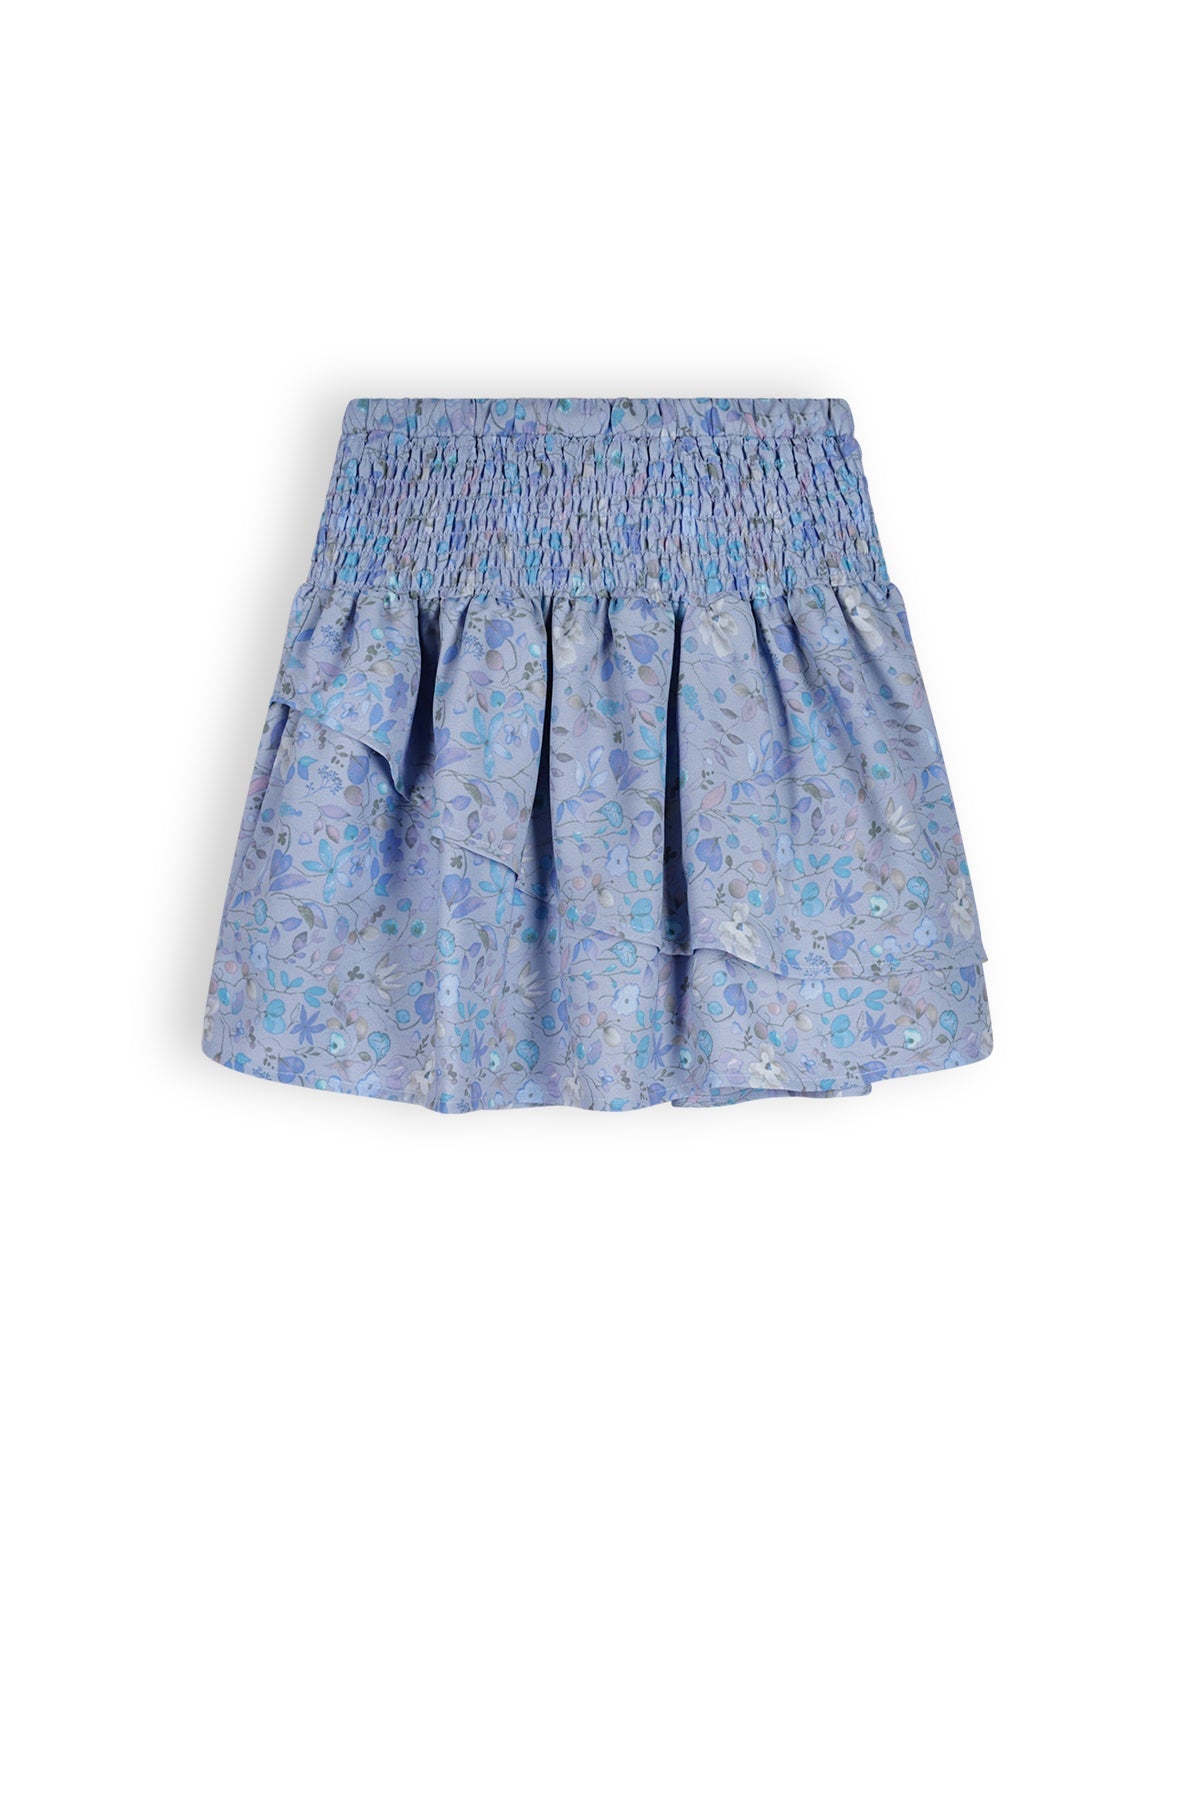 Meisjes Noor Girls Skirt With Smocked Waistband +Jersey Pants Lining Light Blue van NoNo in de kleur Provence Blue in maat 134-140.